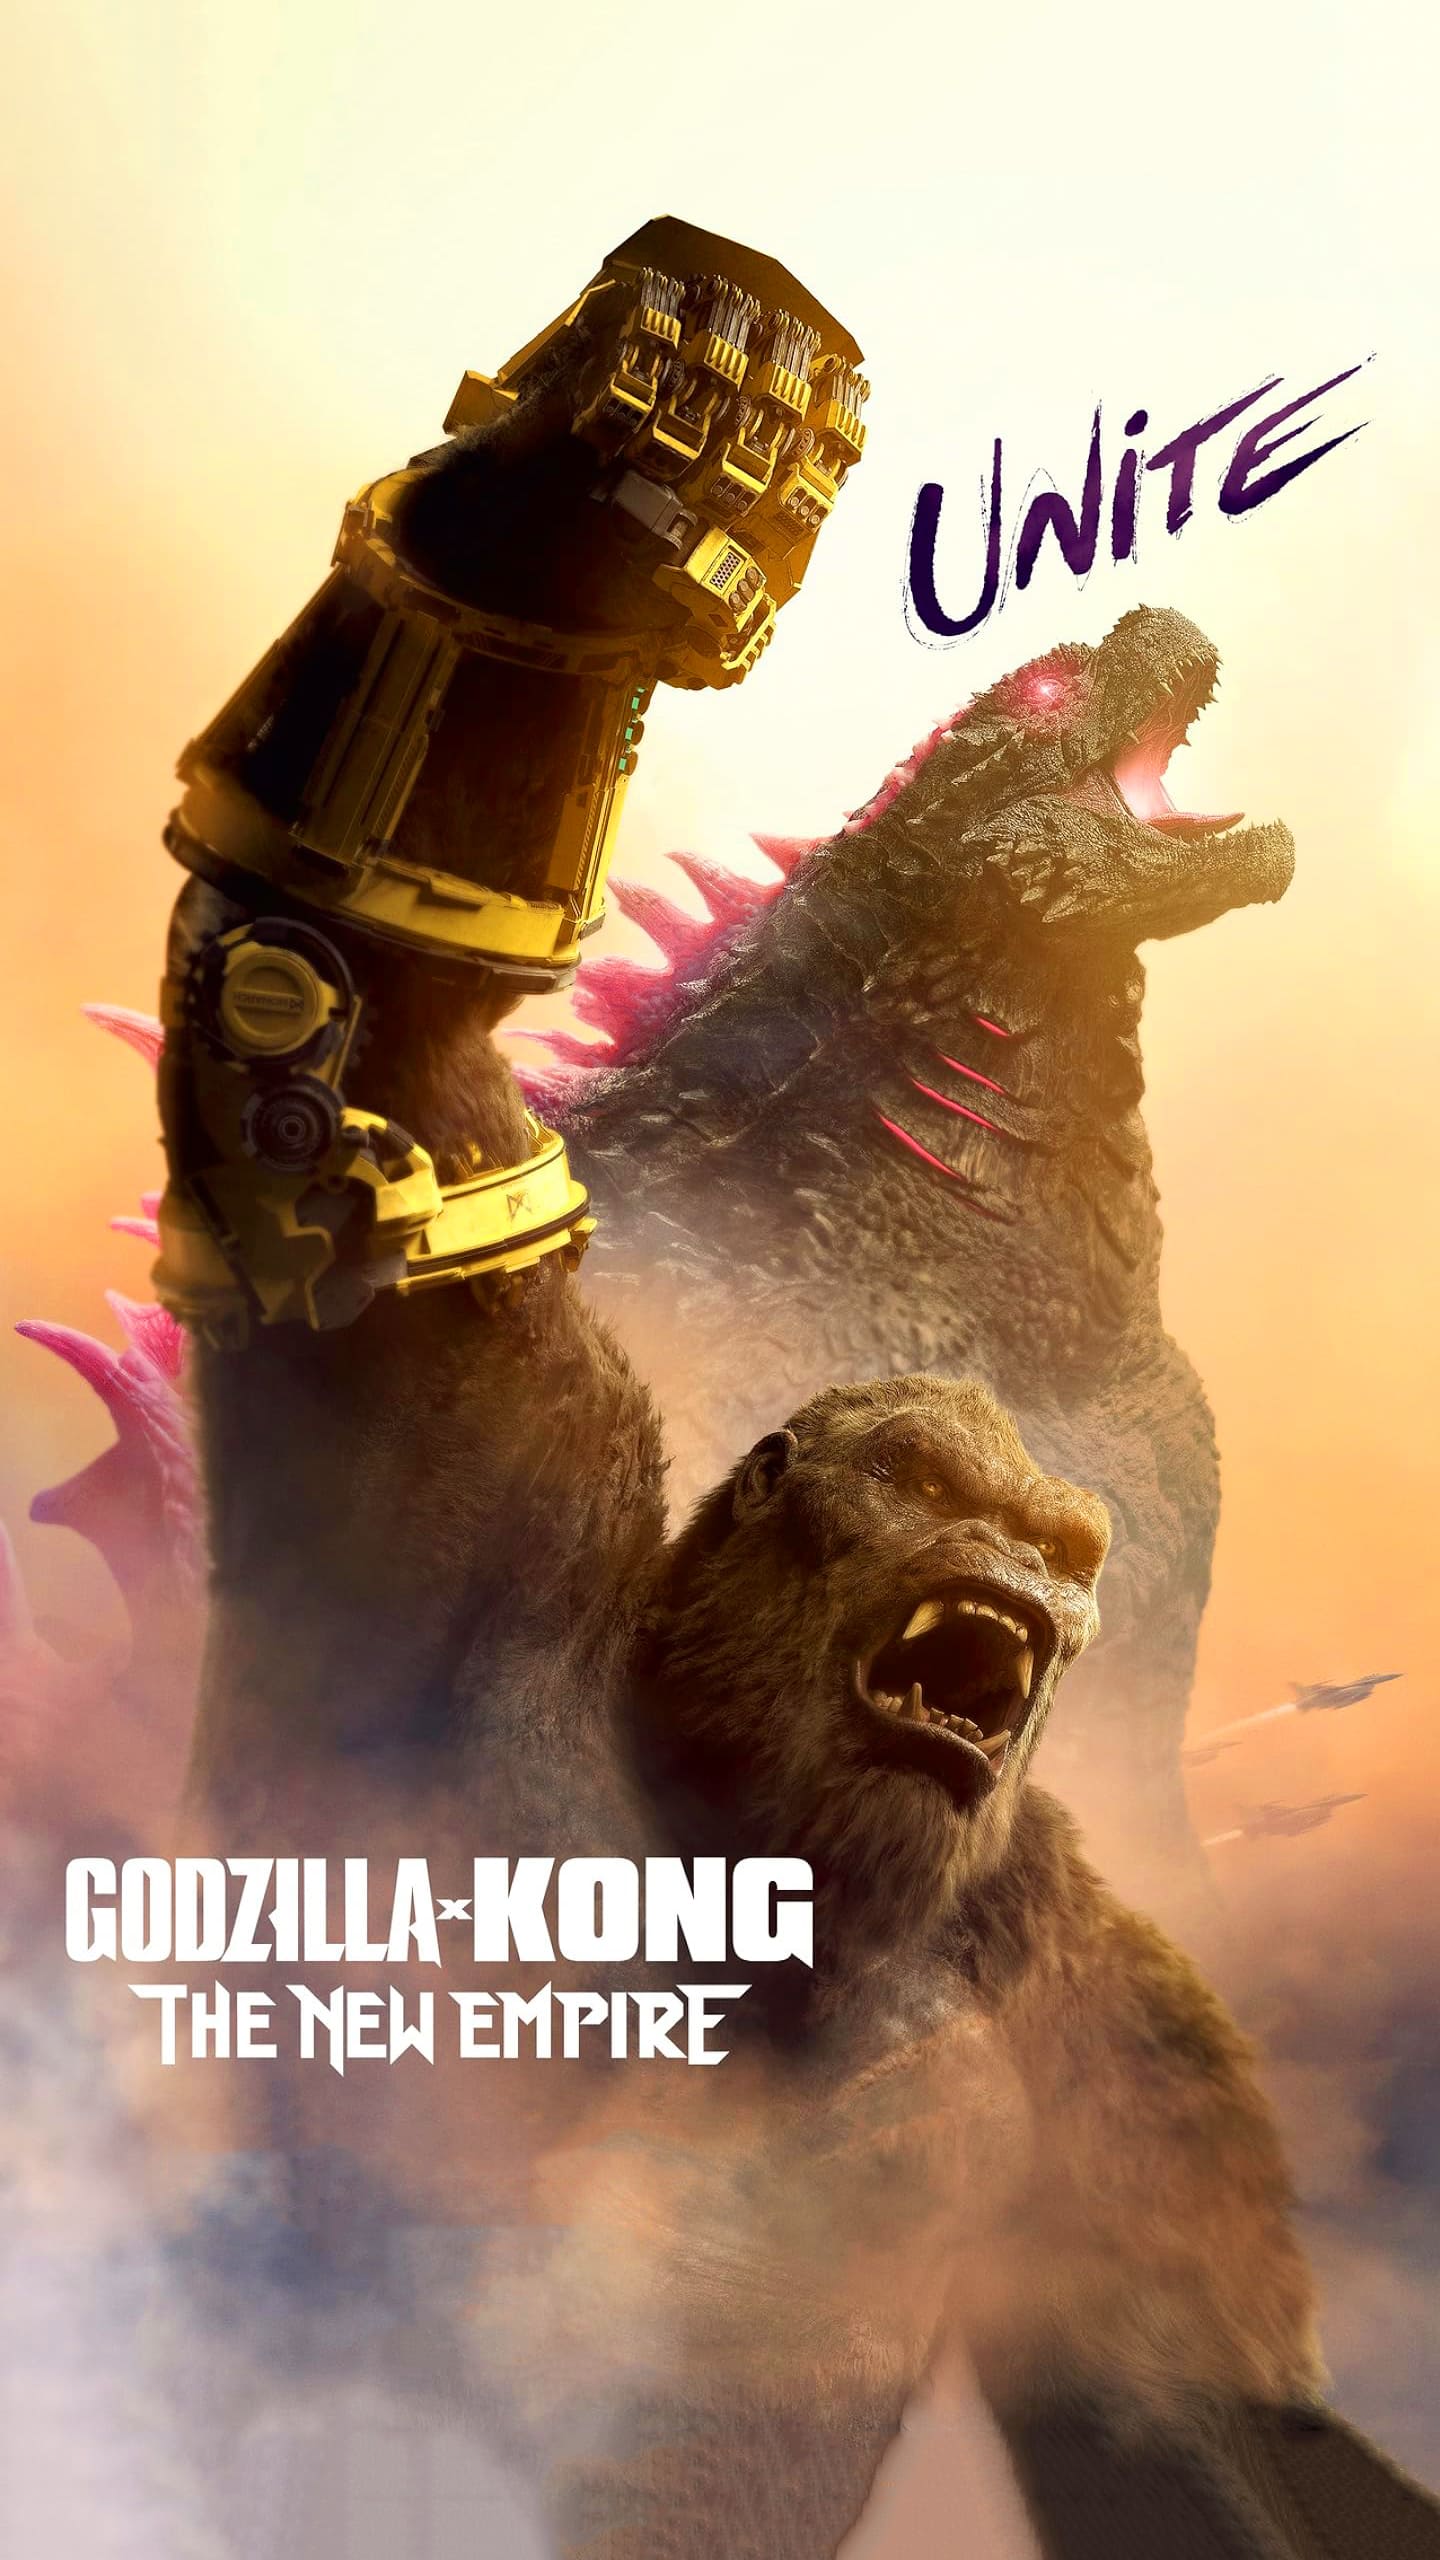 Godzilla X Kong Wallpapers